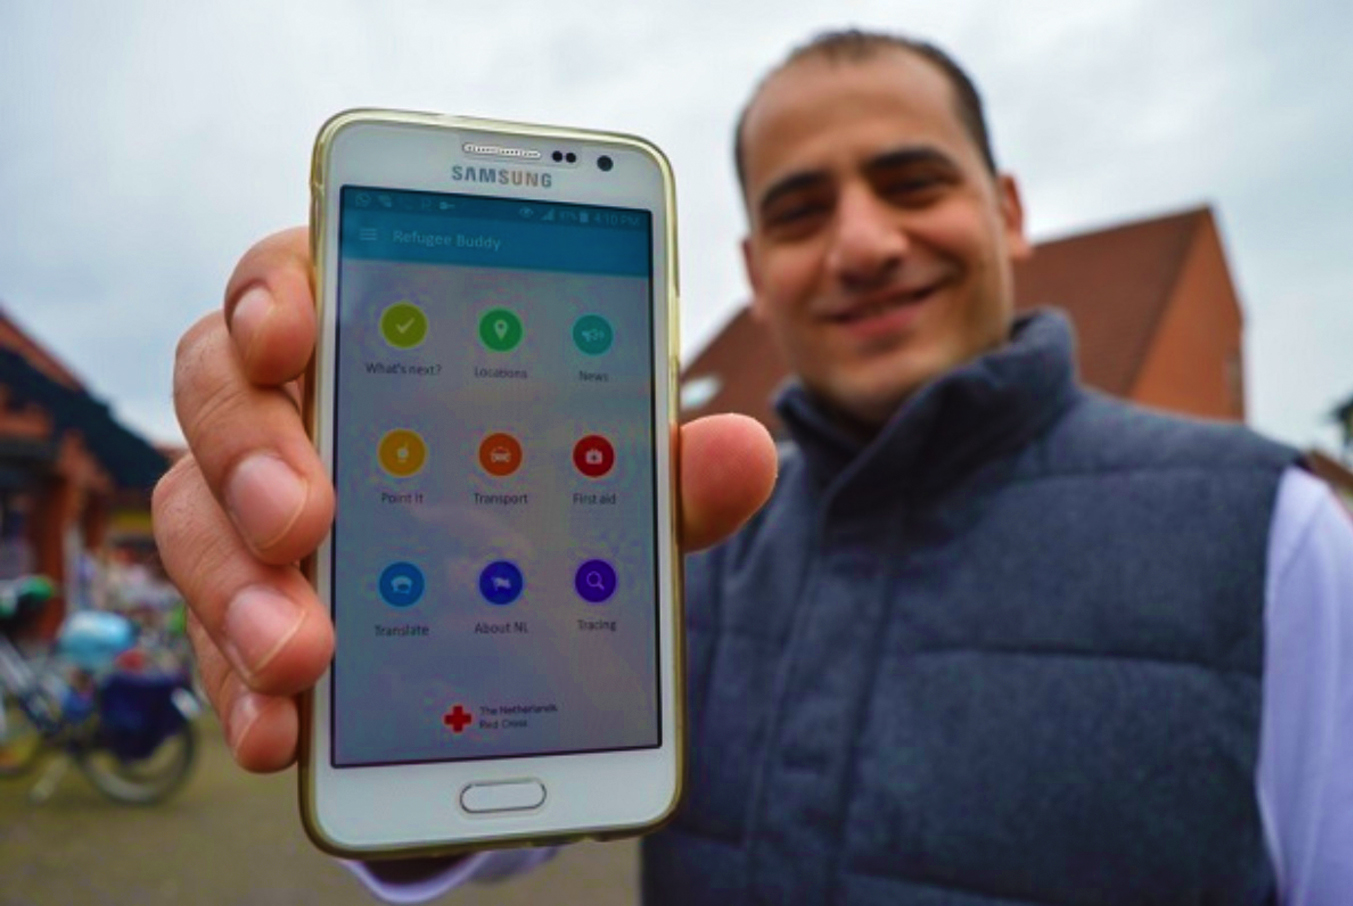 Gebruiker Refugee Buddy App Rode Kruis